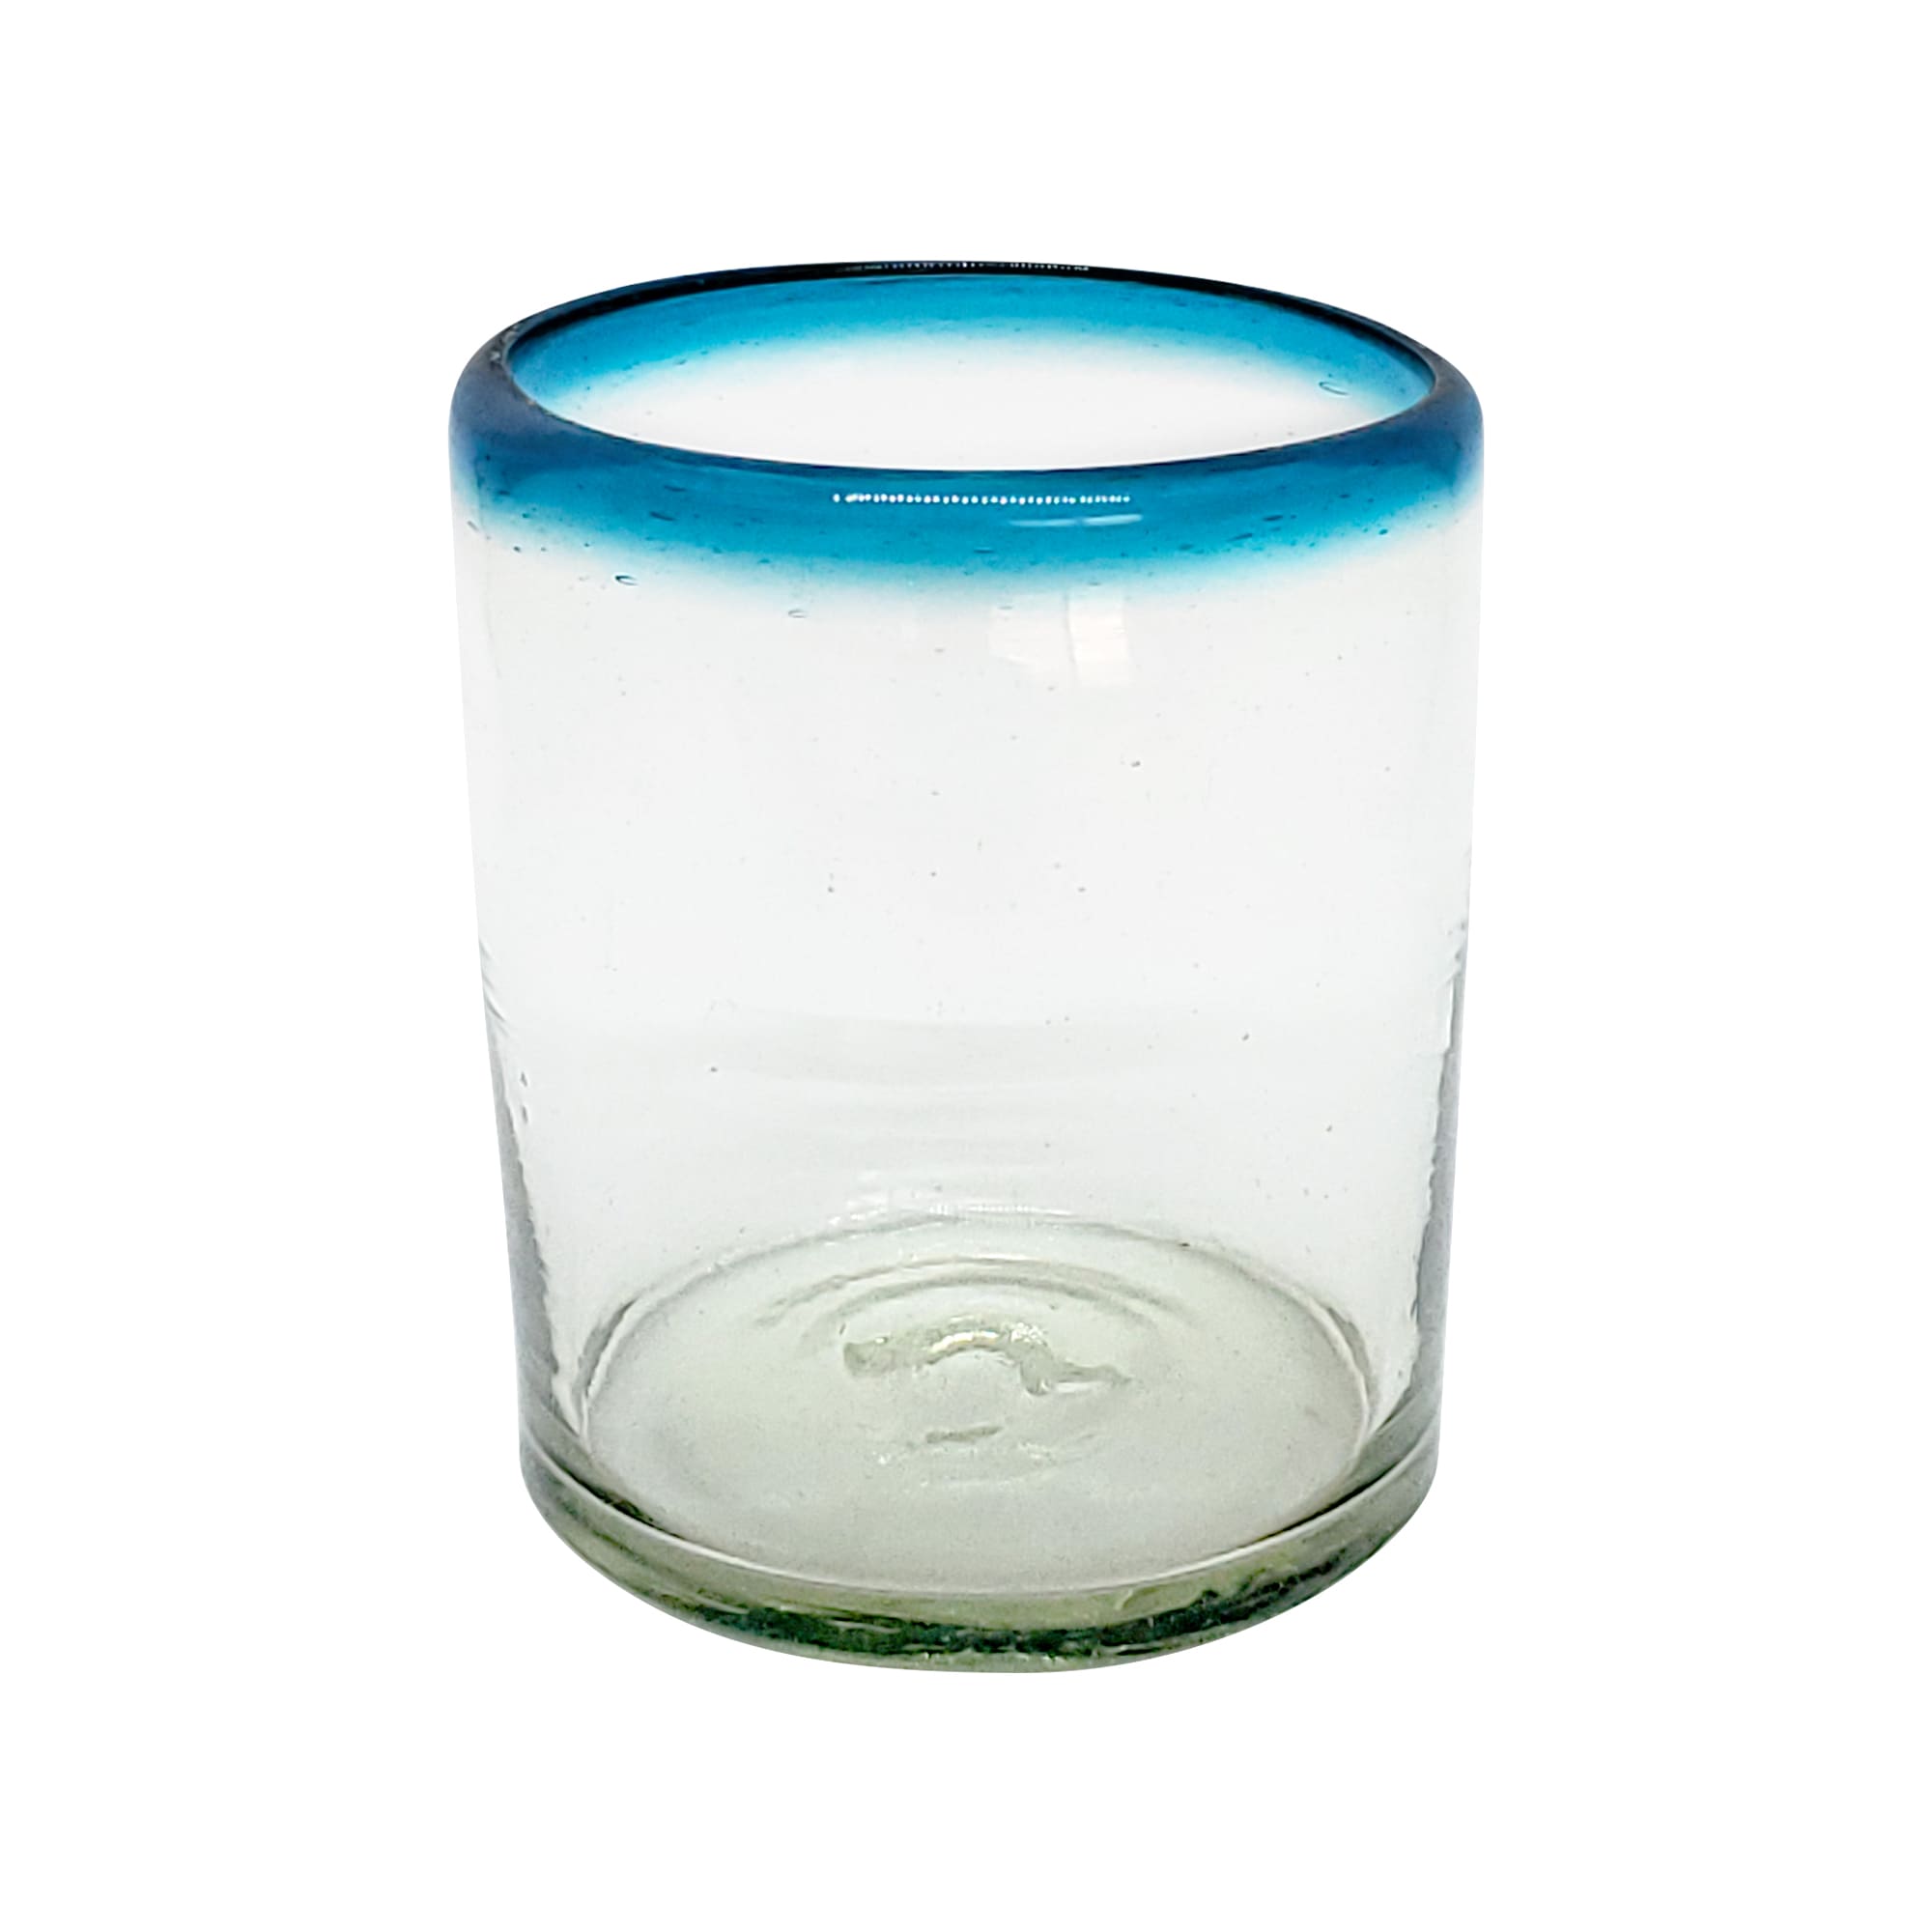 VIDRIO SOPLADO / Juego de 6 vasos chicos con borde azul aqua, 10 oz, Vidrio Reciclado, Libre de Plomo y Toxinas